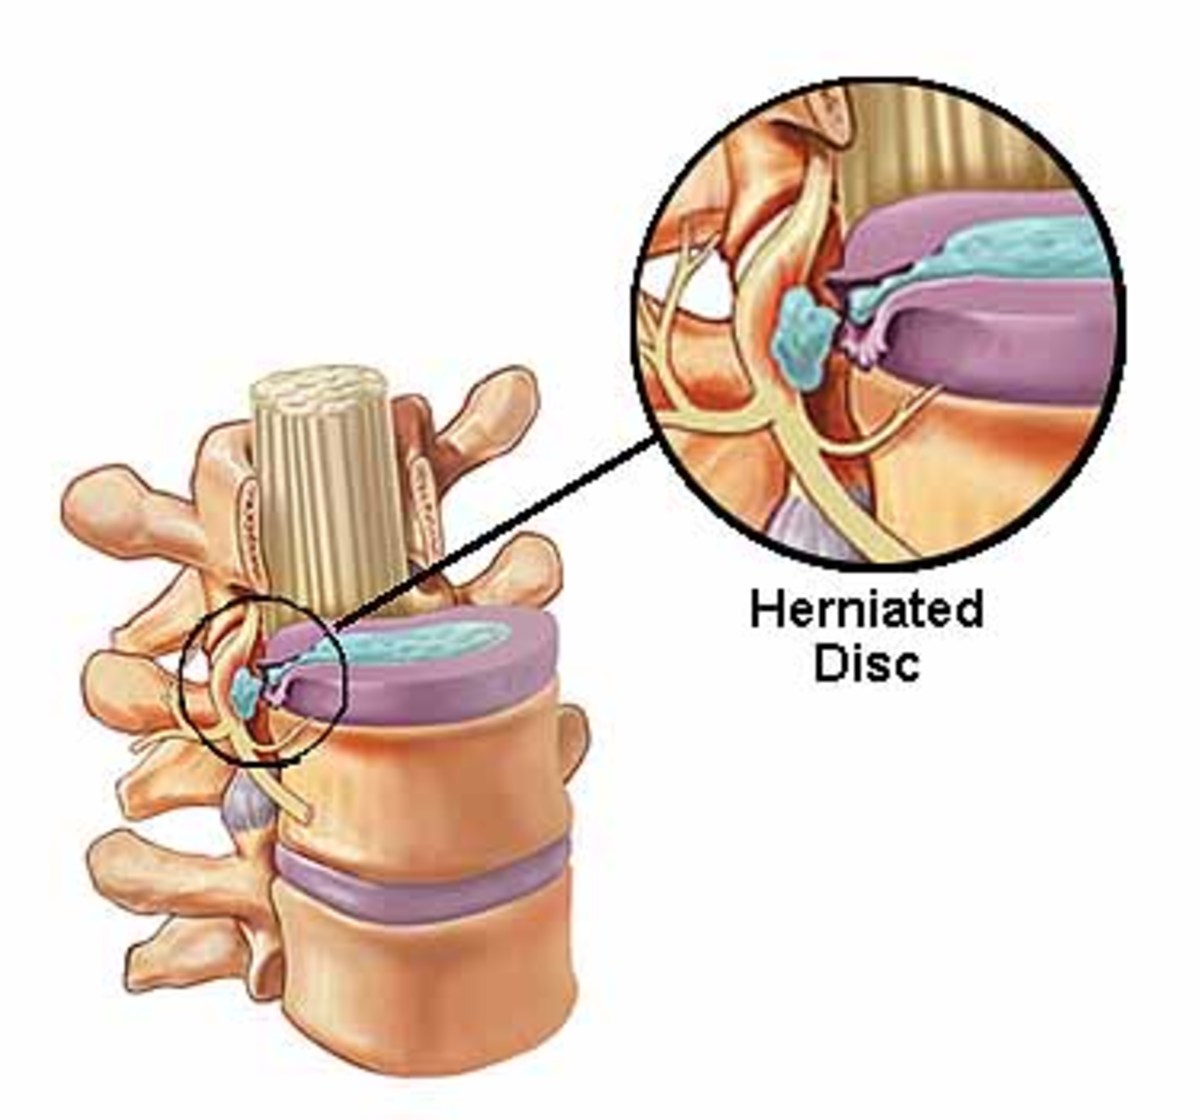 herniated-disc-treatment